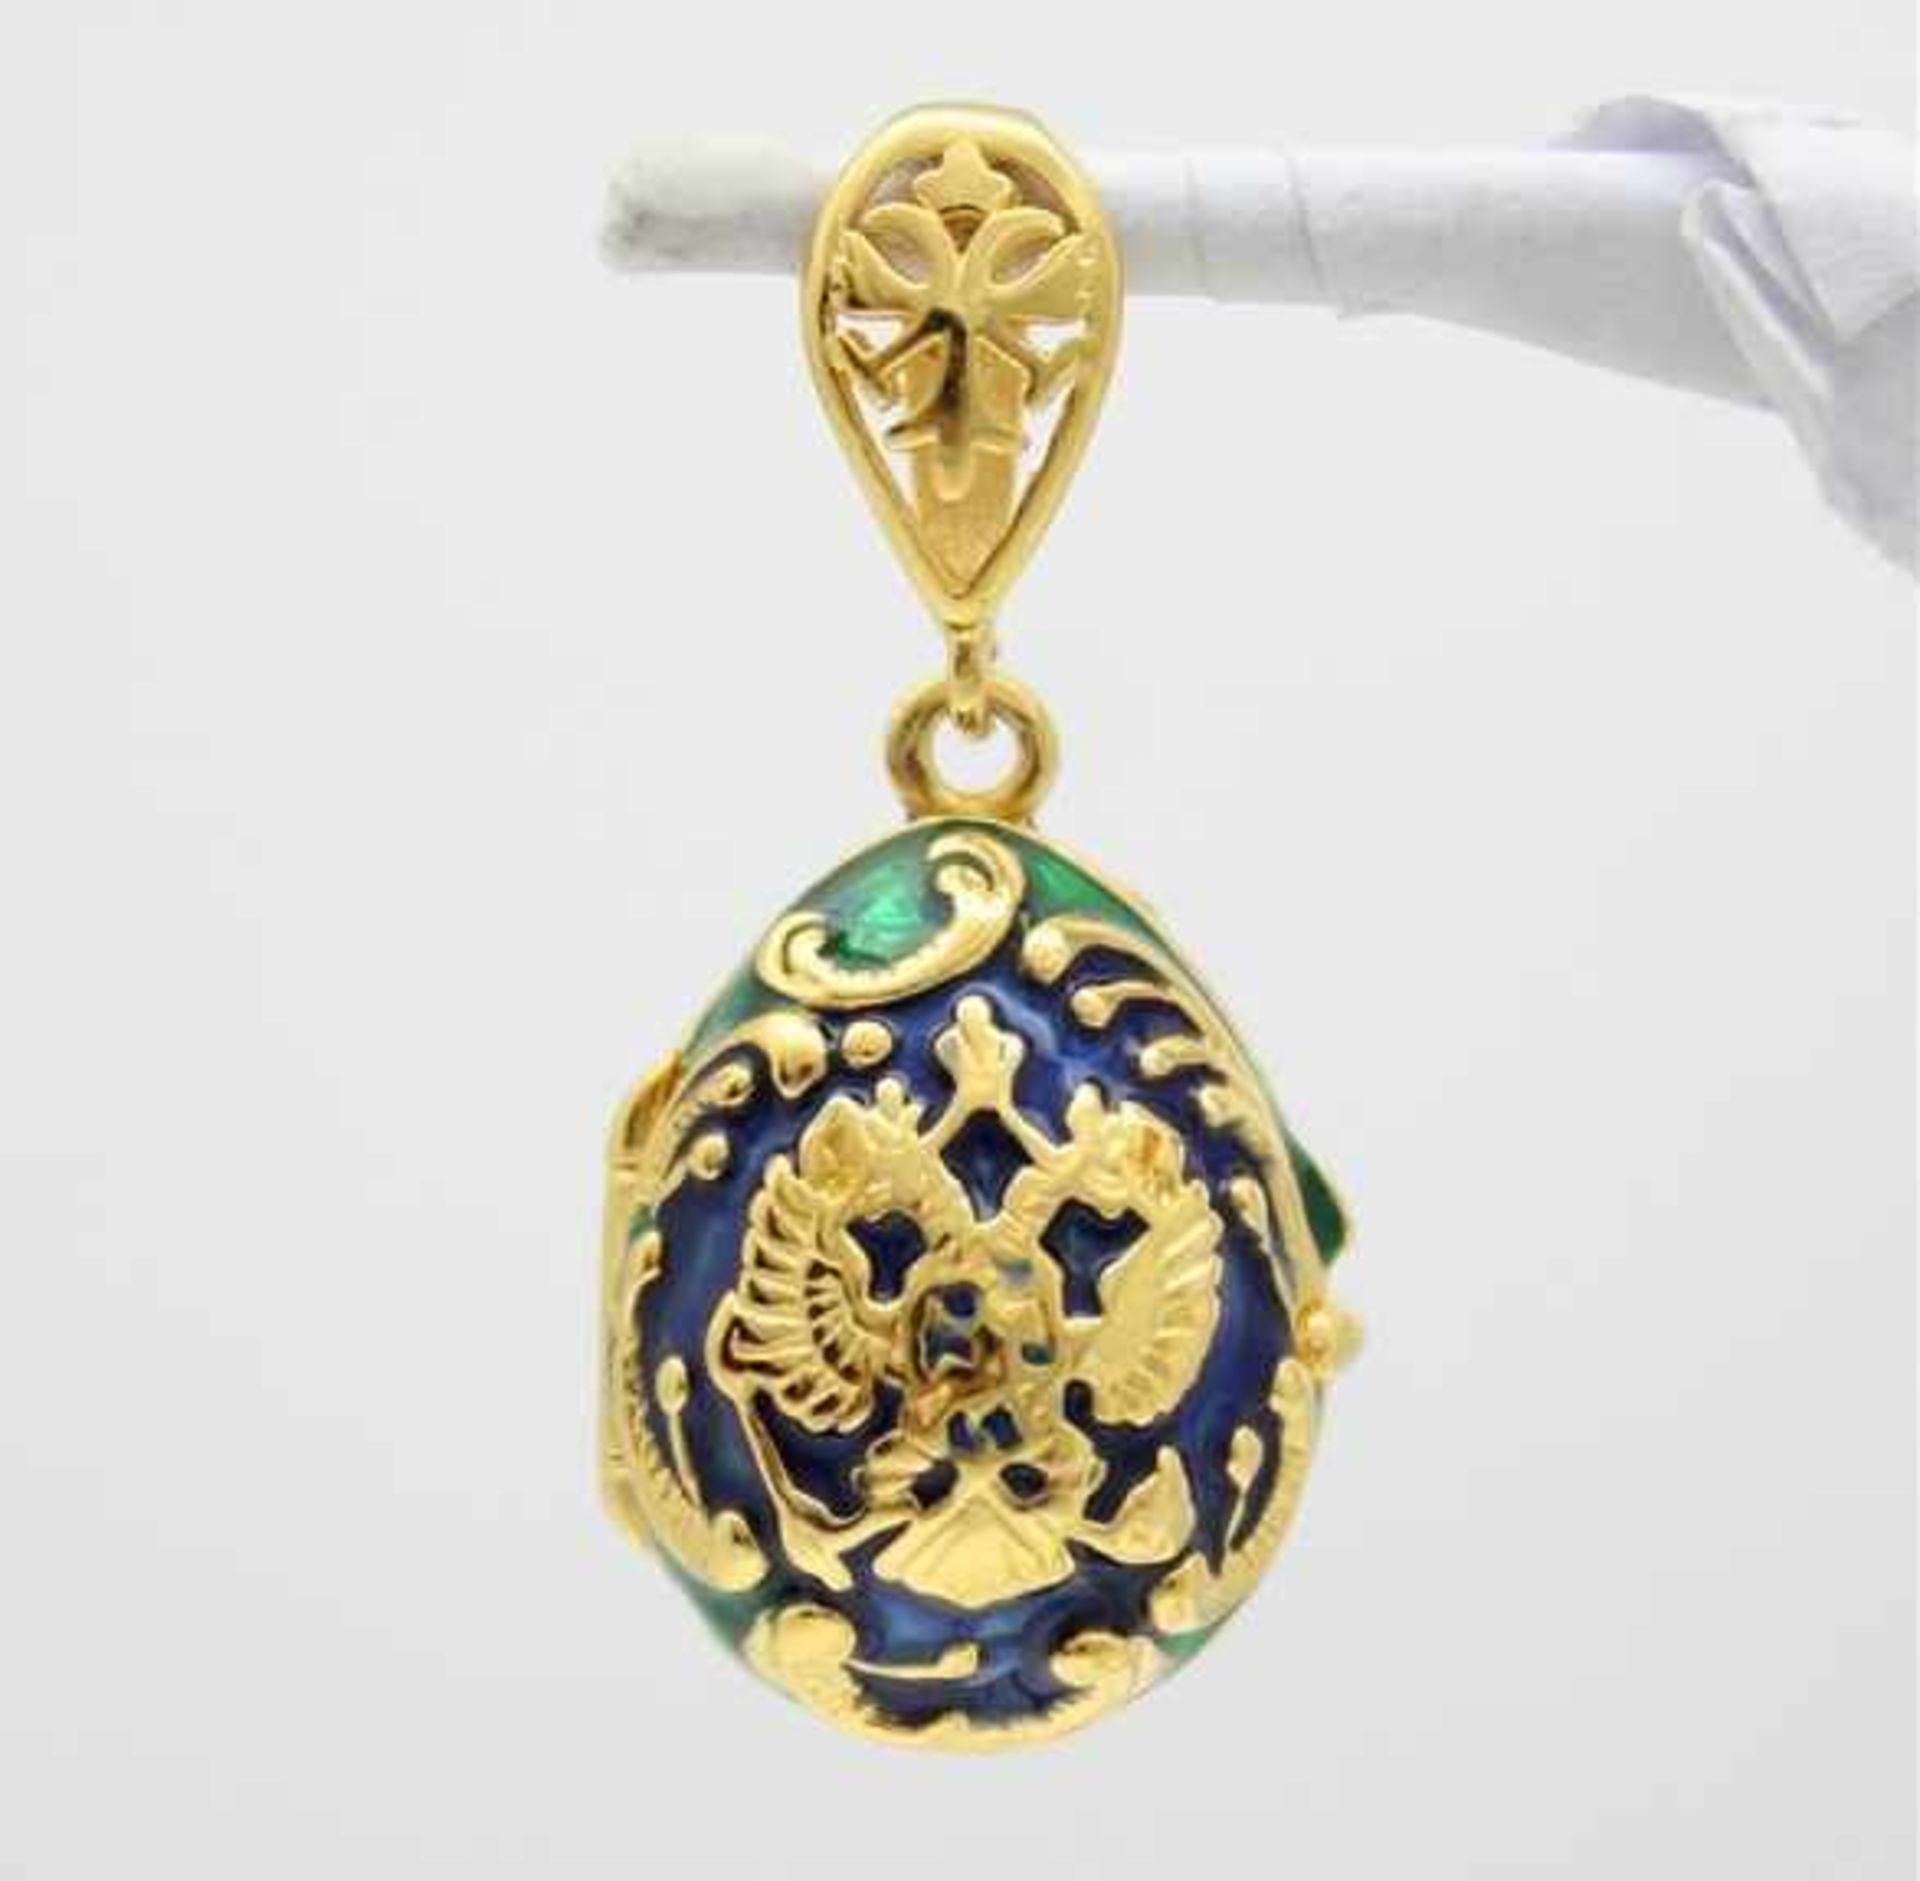 Blaues Ei mit russischem Doppelkopfadler. Kettenanhänger in russischem Faberge-Stil. 925 Sterling